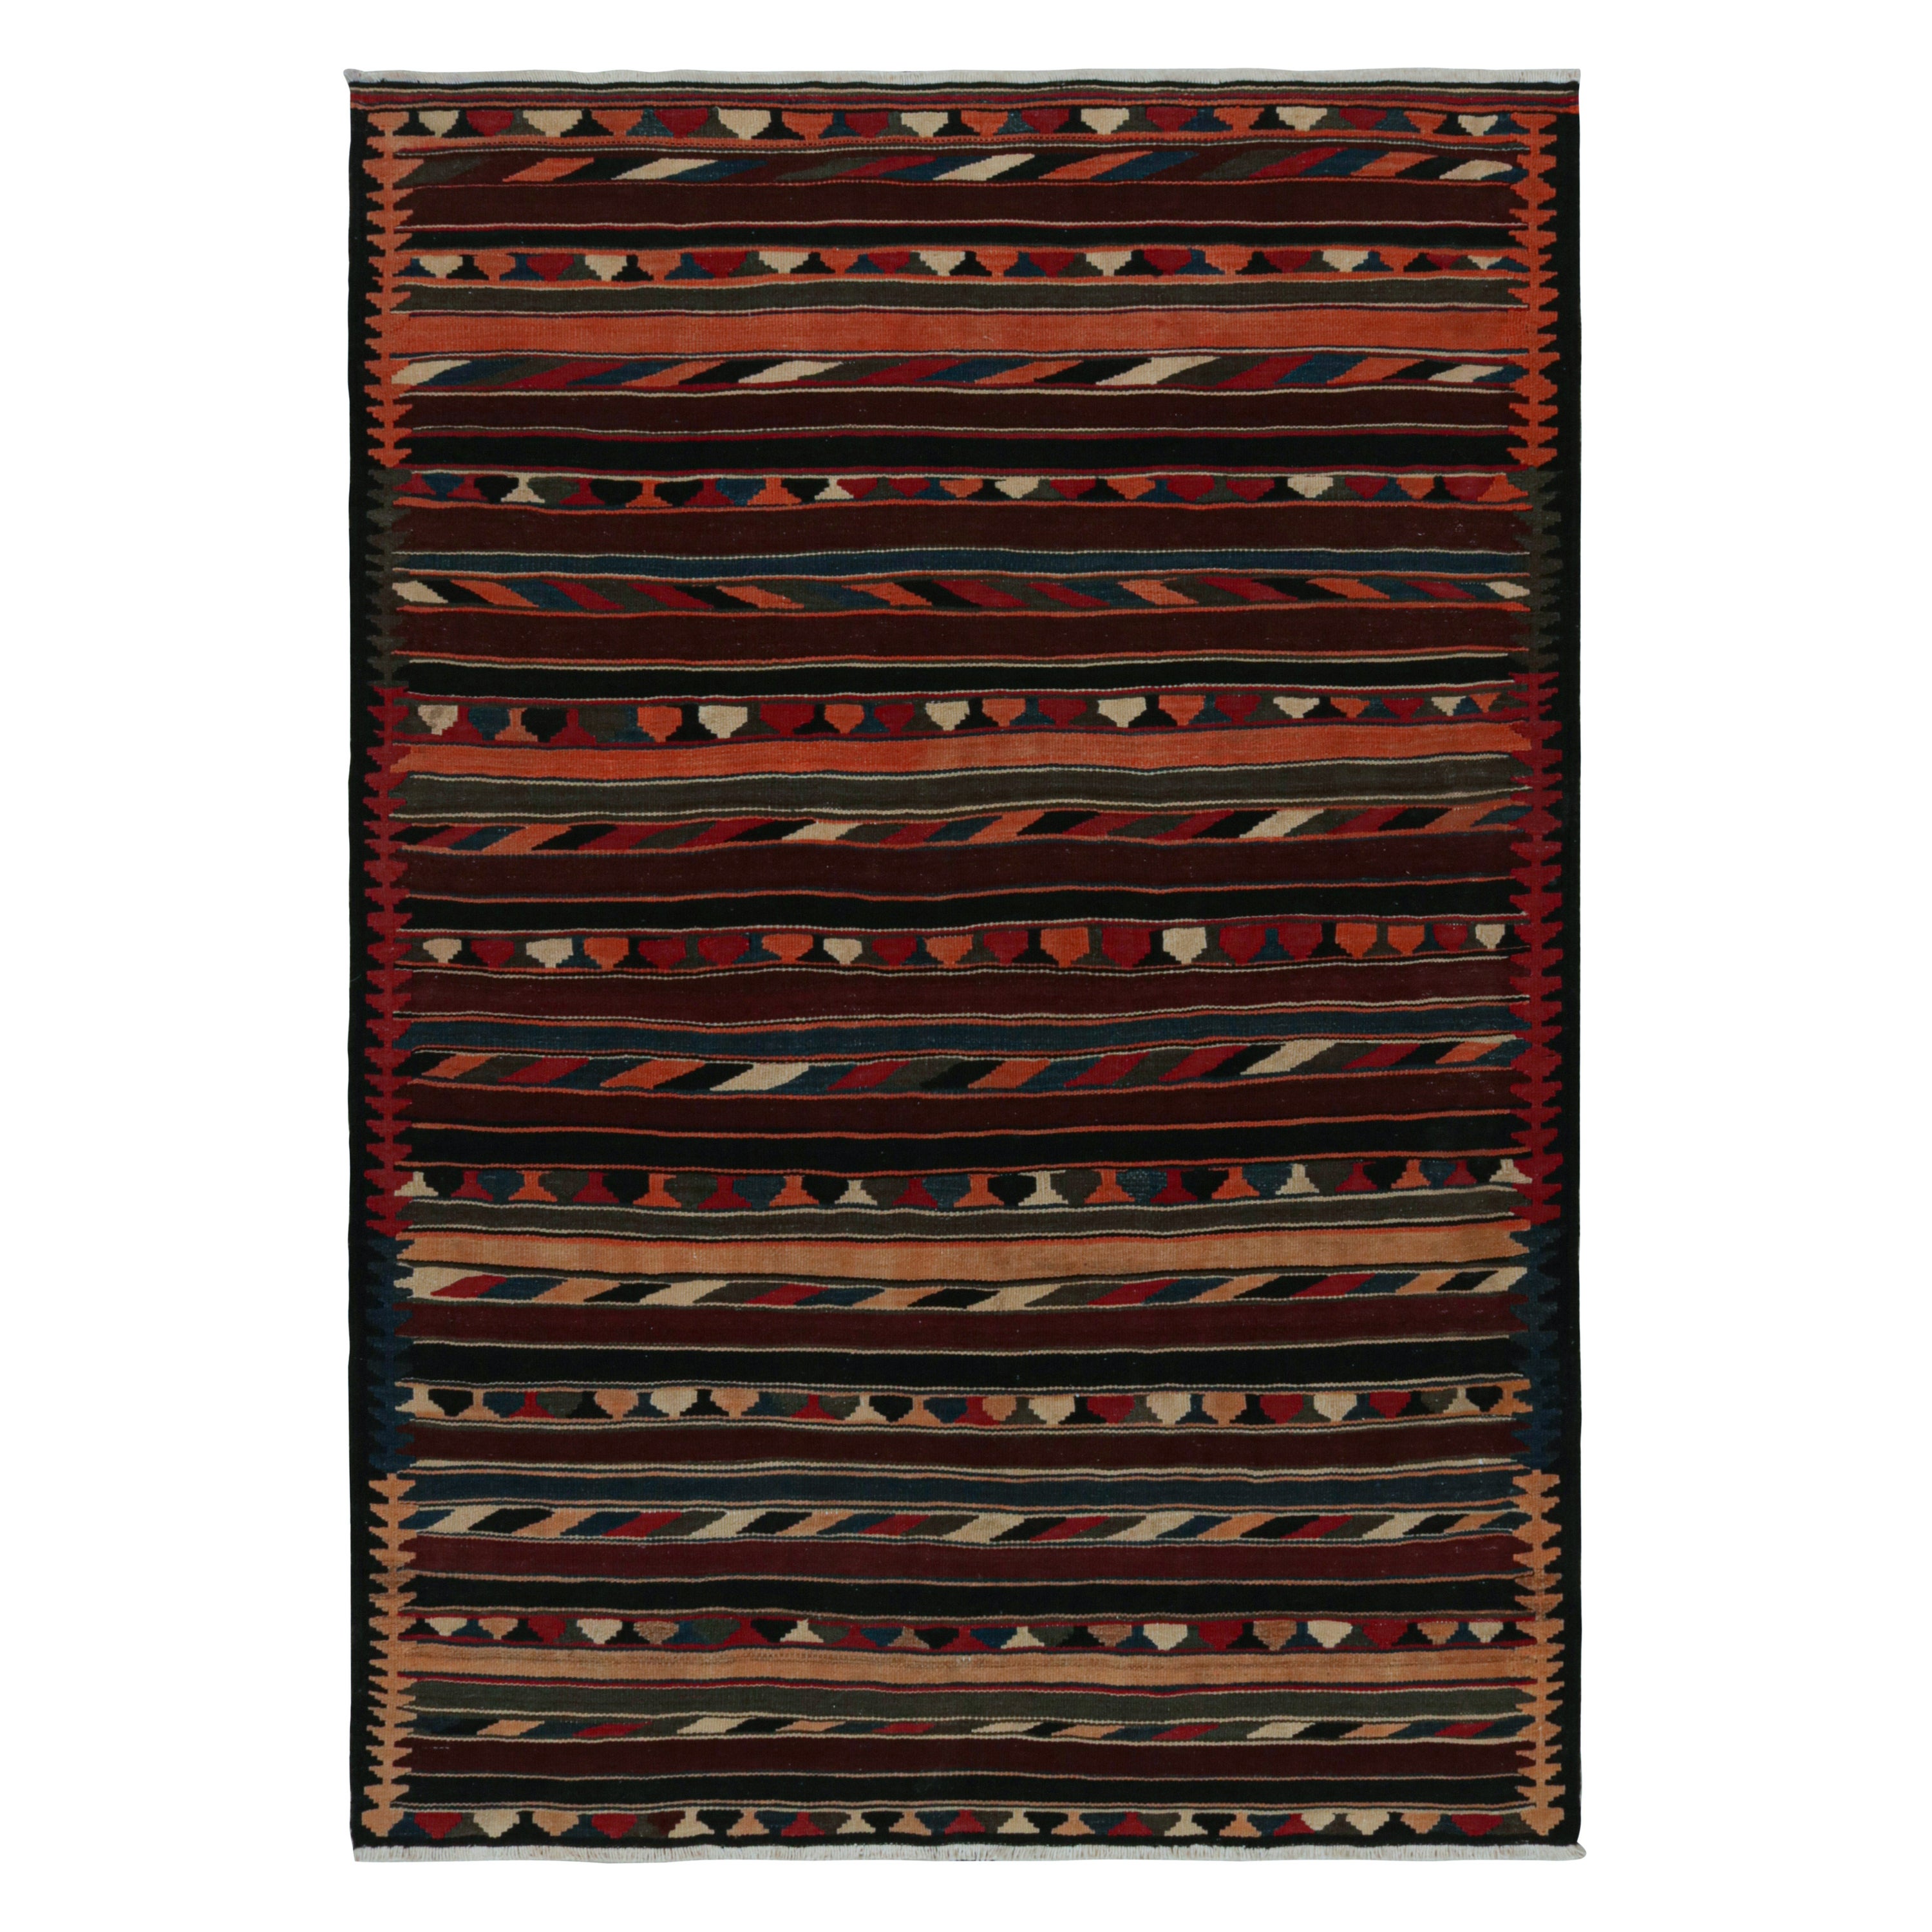 Vintage Afghan Tribal Kilim in Colorful Geometric Patterns, from Rug & Kilim